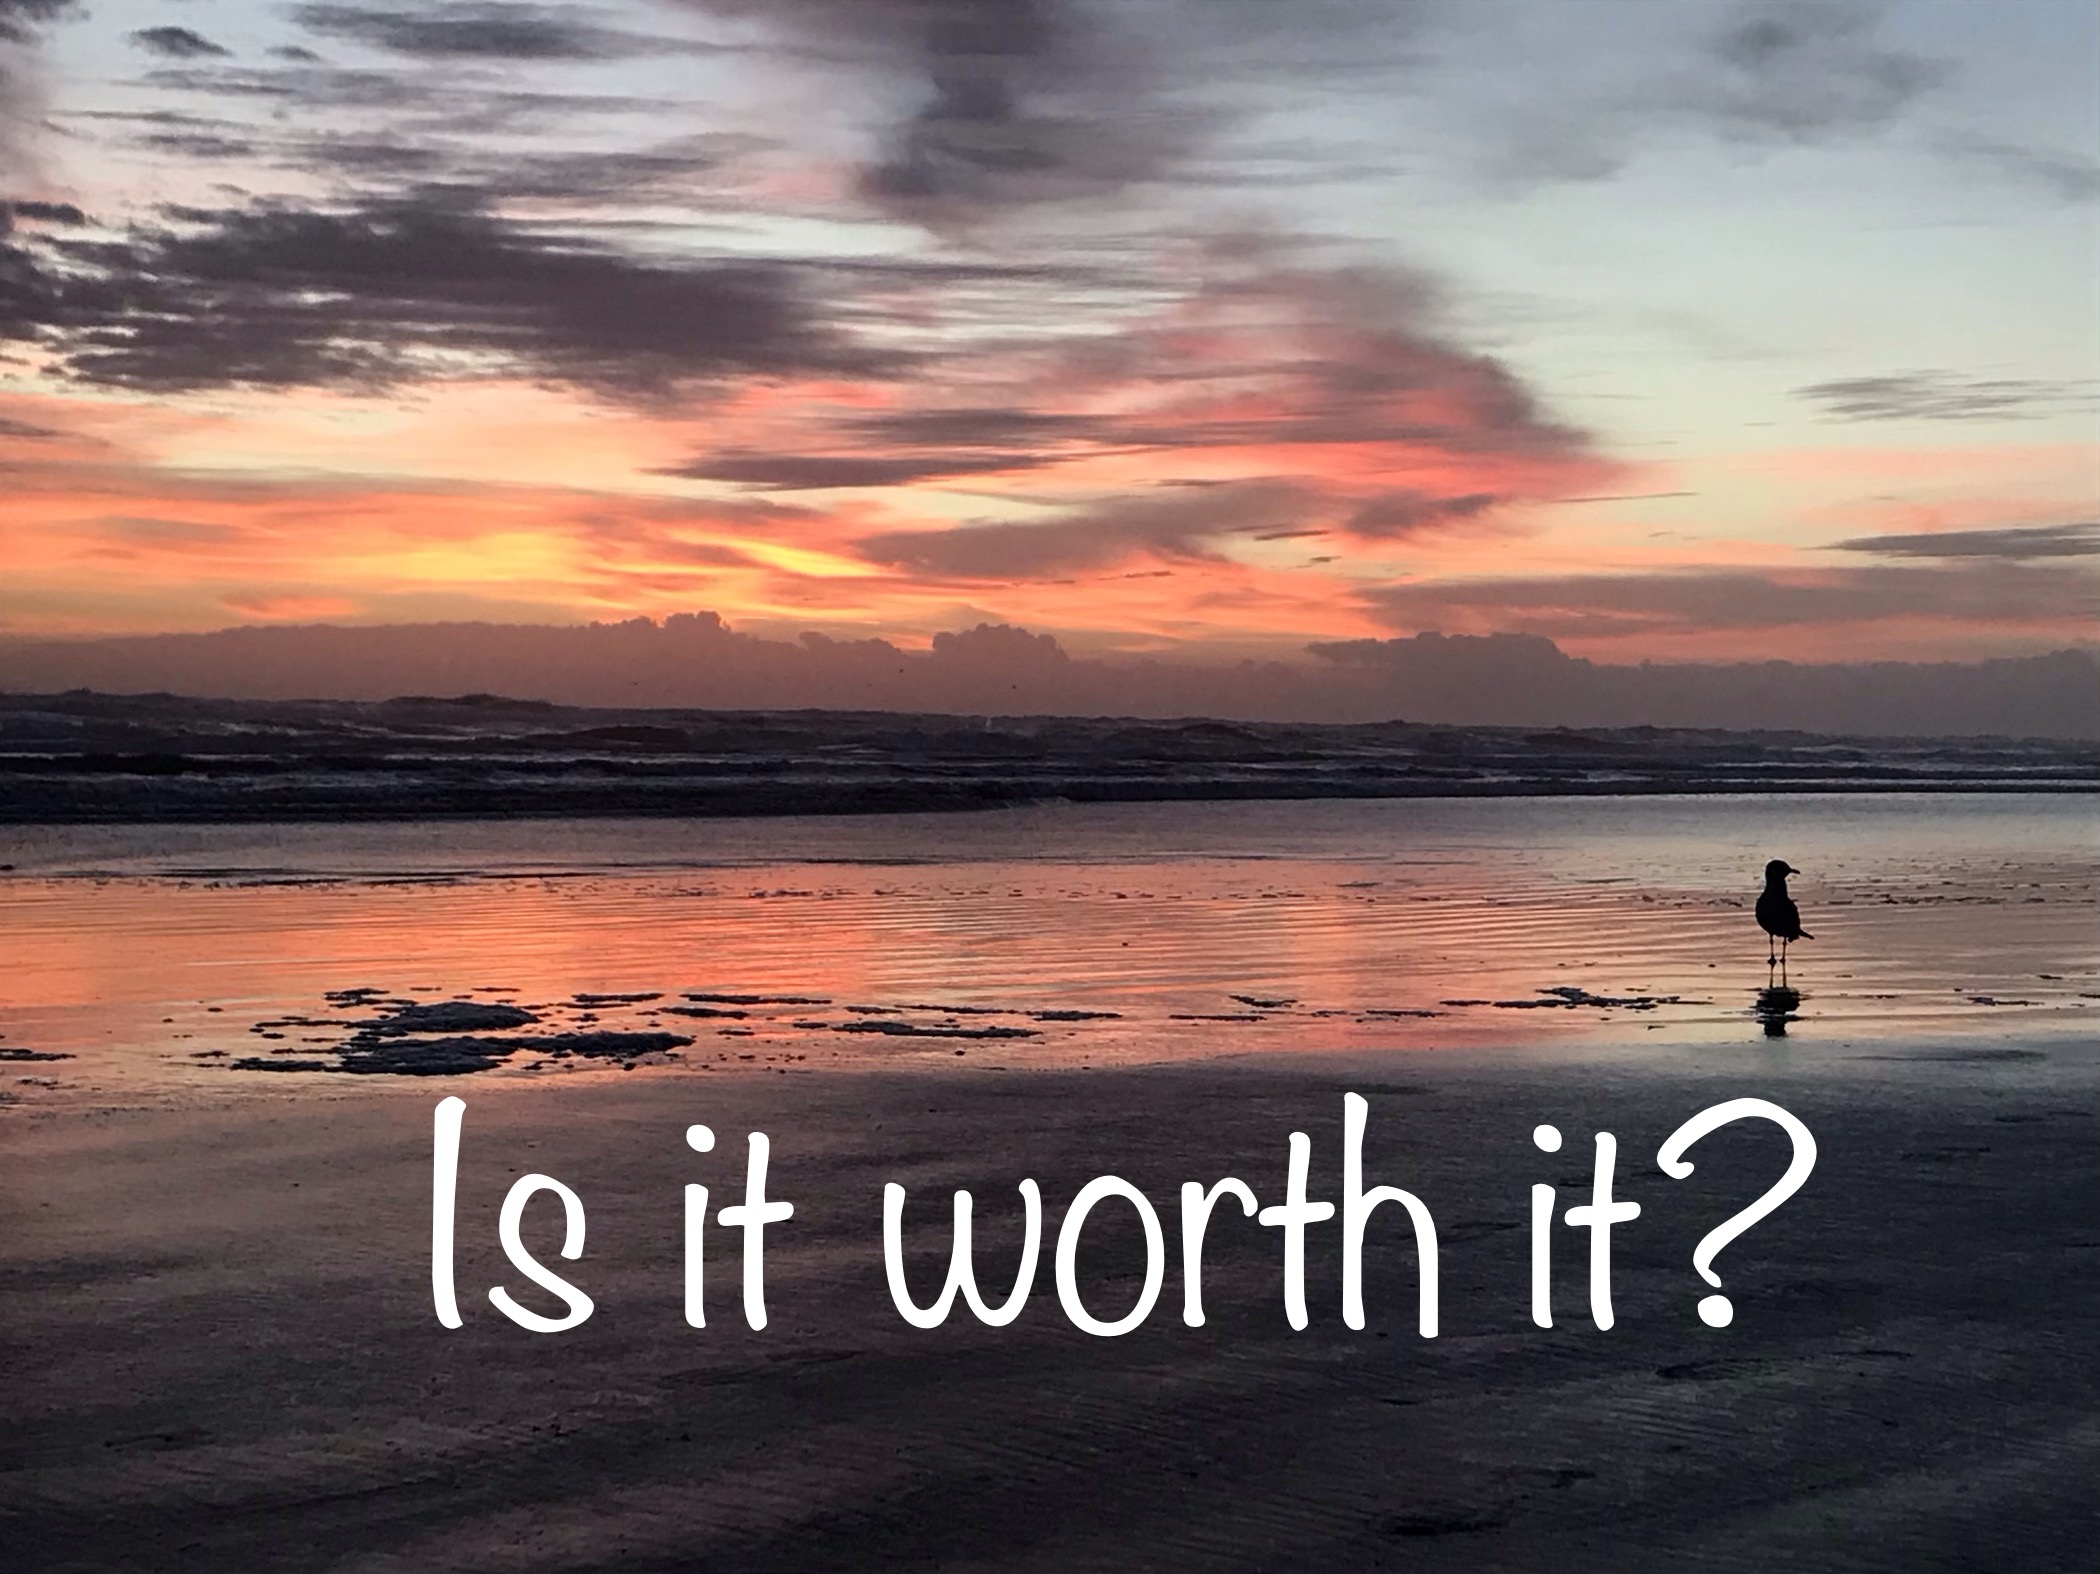 “Is it worth it?”